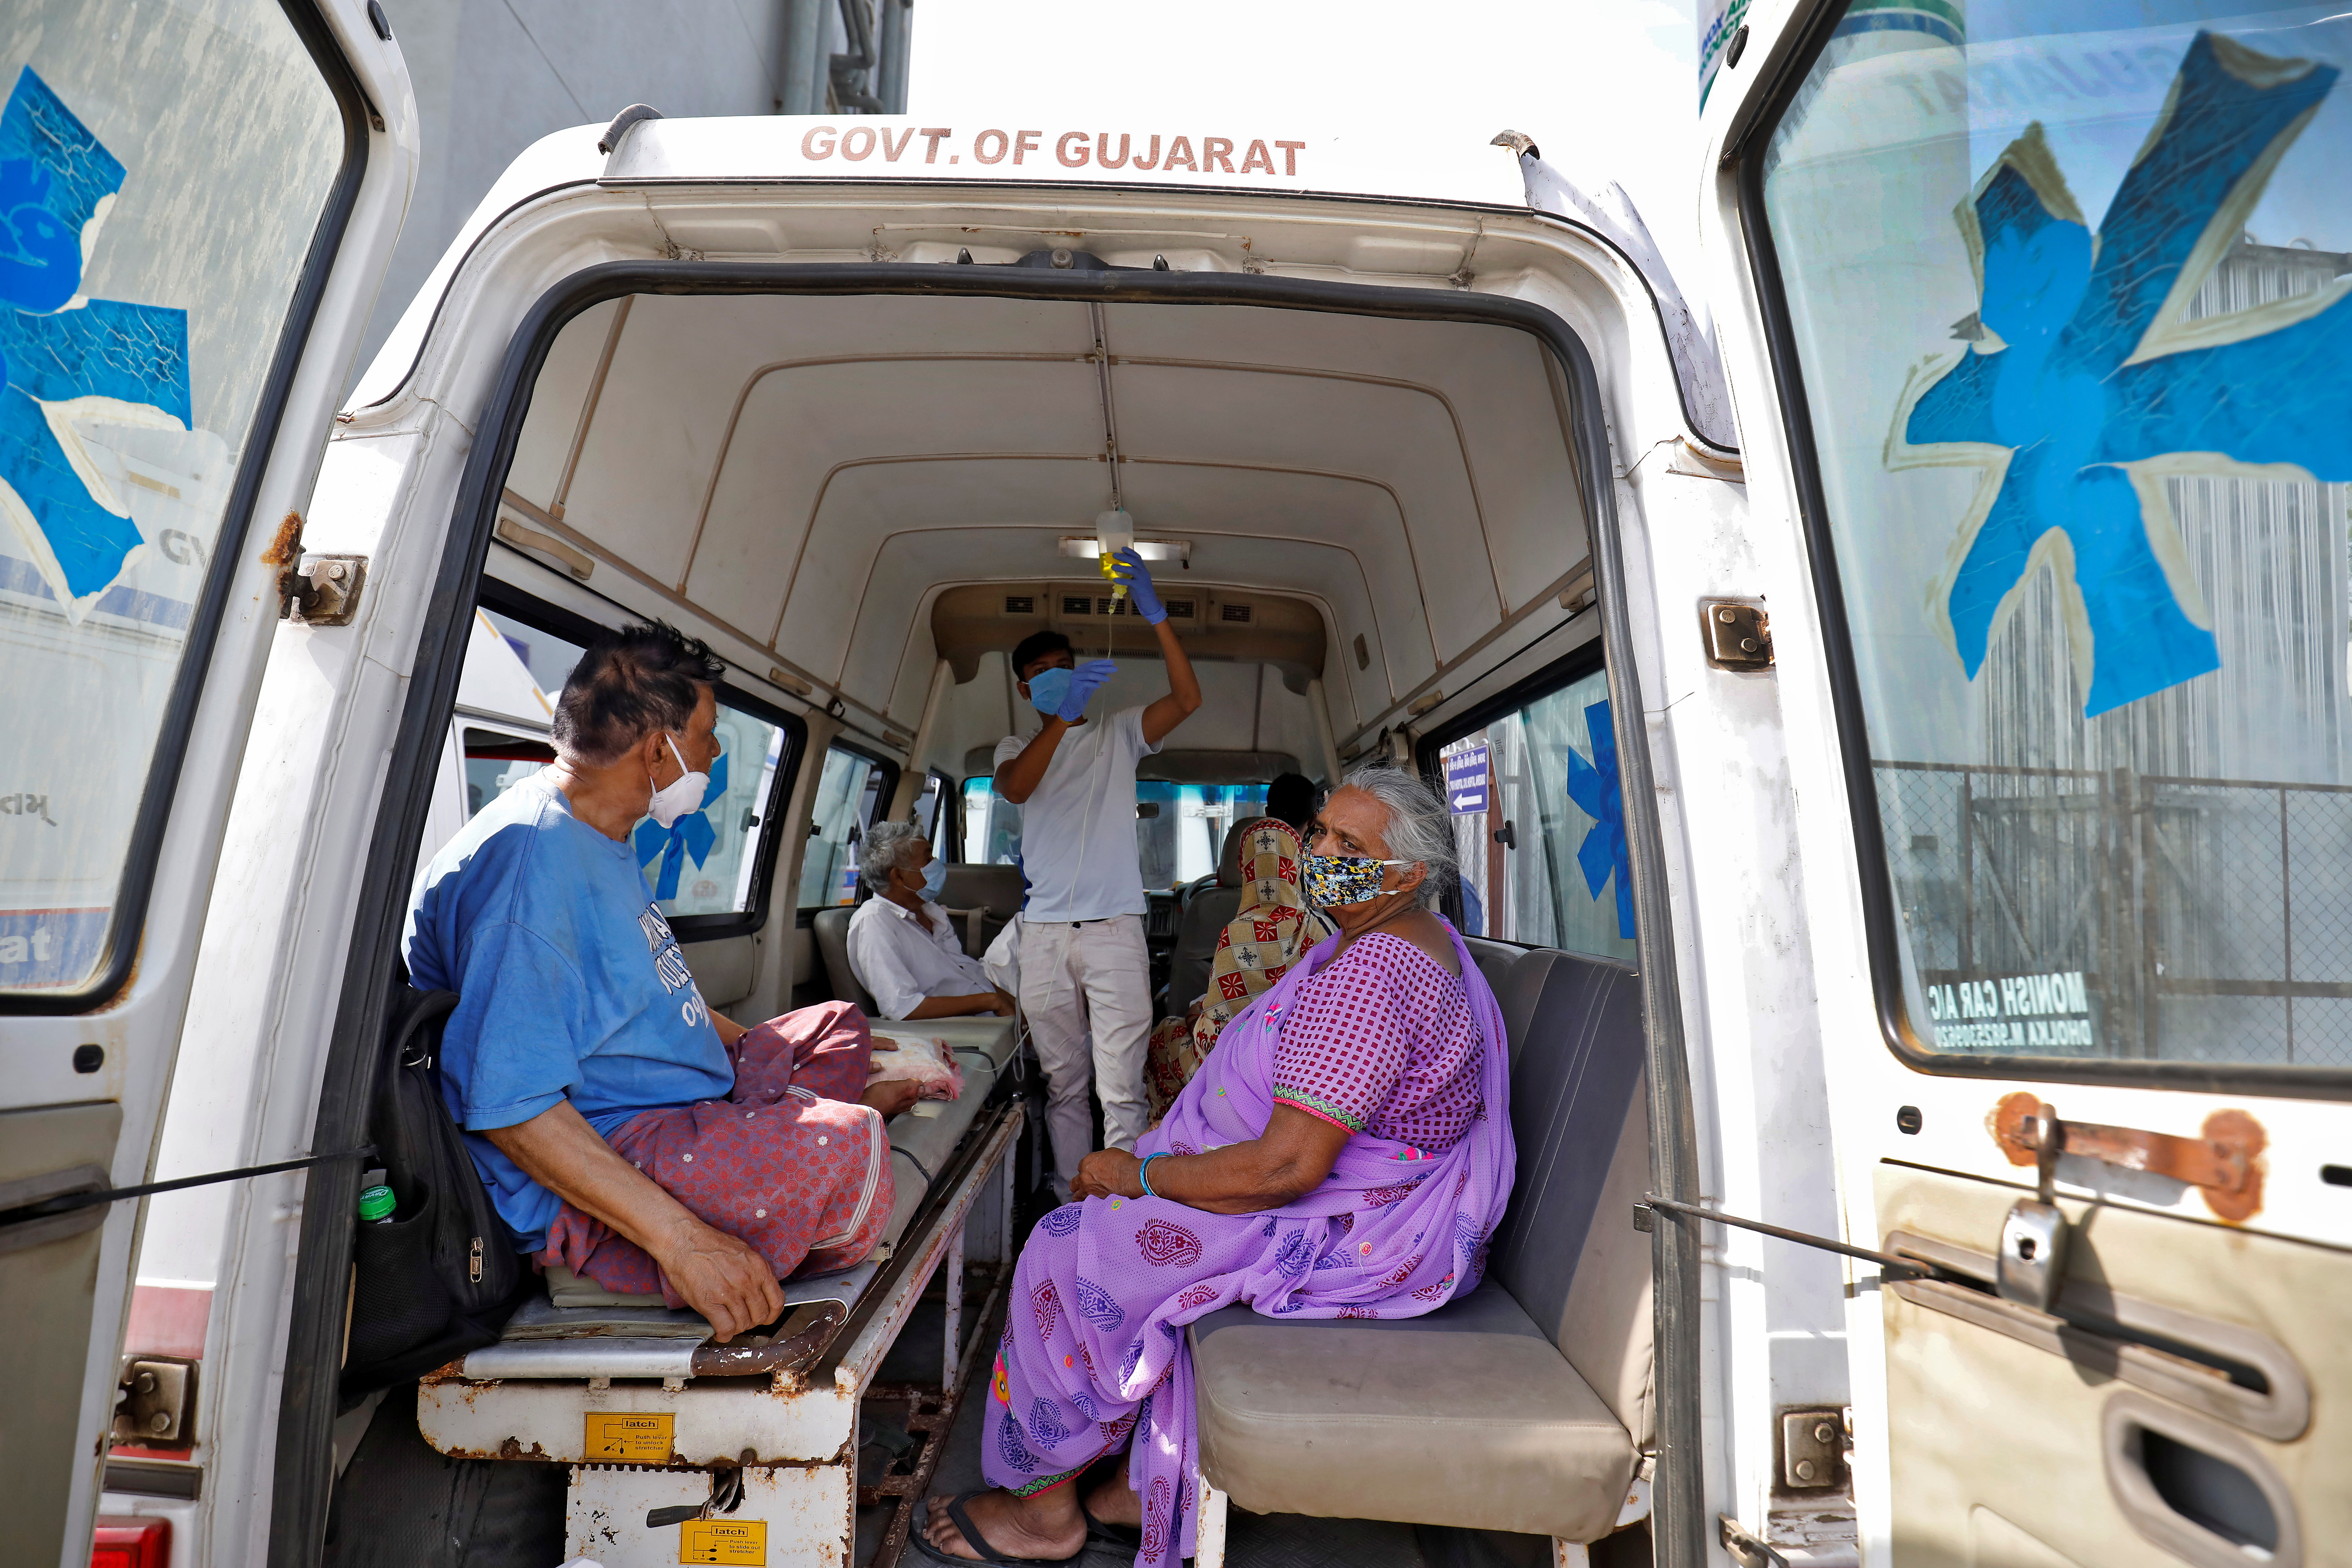 Os pacientes vense dentro dunha ambulancia mentres agardan ingresar nun hospital COVID-19 para o tratamento, no medio da propagación da enfermidade do coronavirus (COVID-19) en Ahmedabad, India, o 22 de abril de 2021. REUTERS / Amit Dave